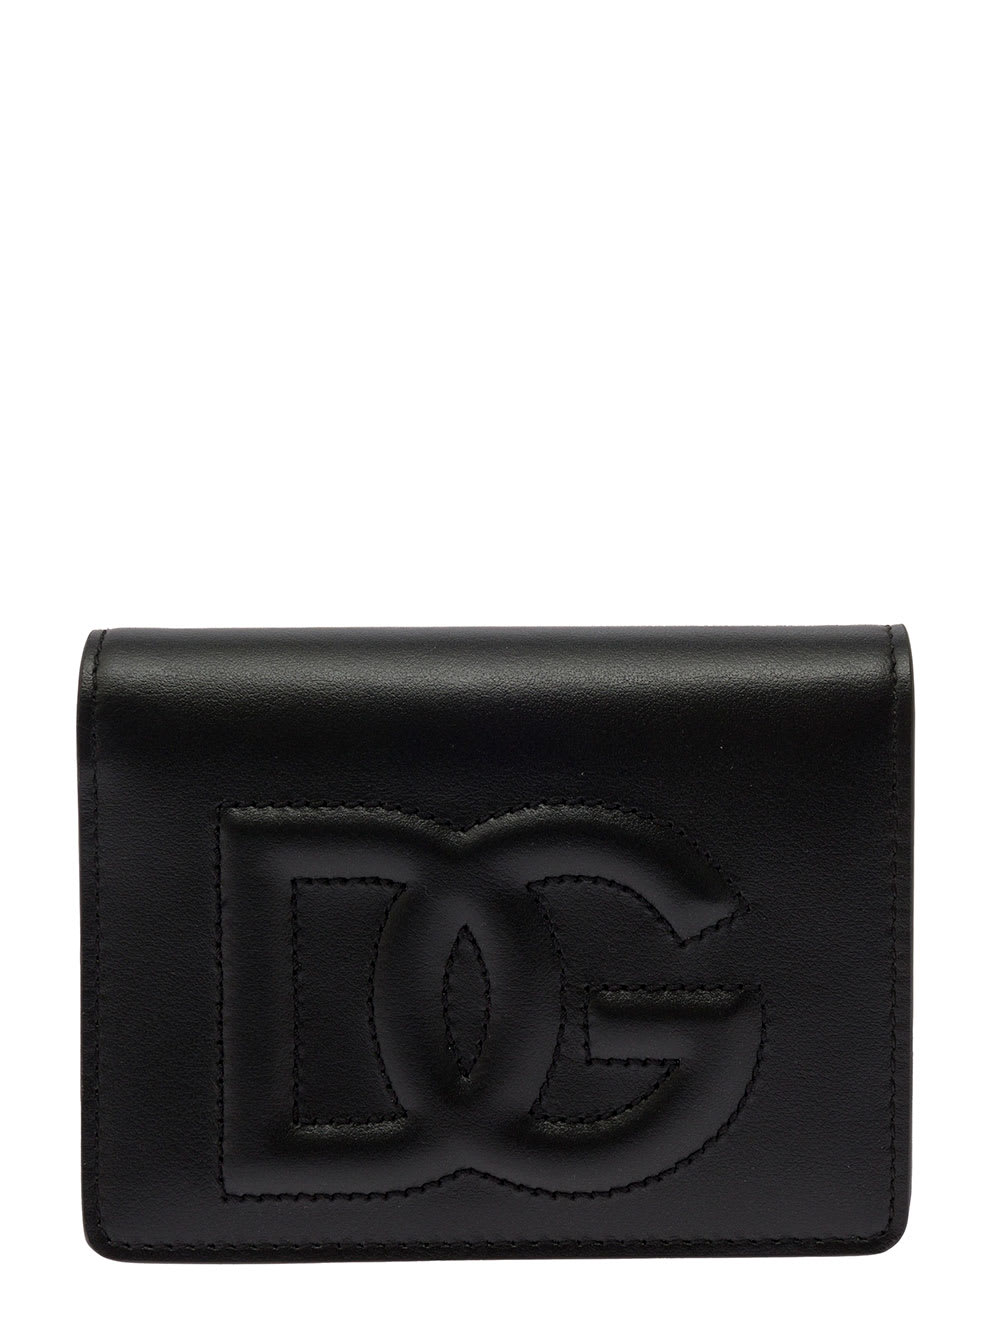 Dolce & Gabbana Dg Wallet